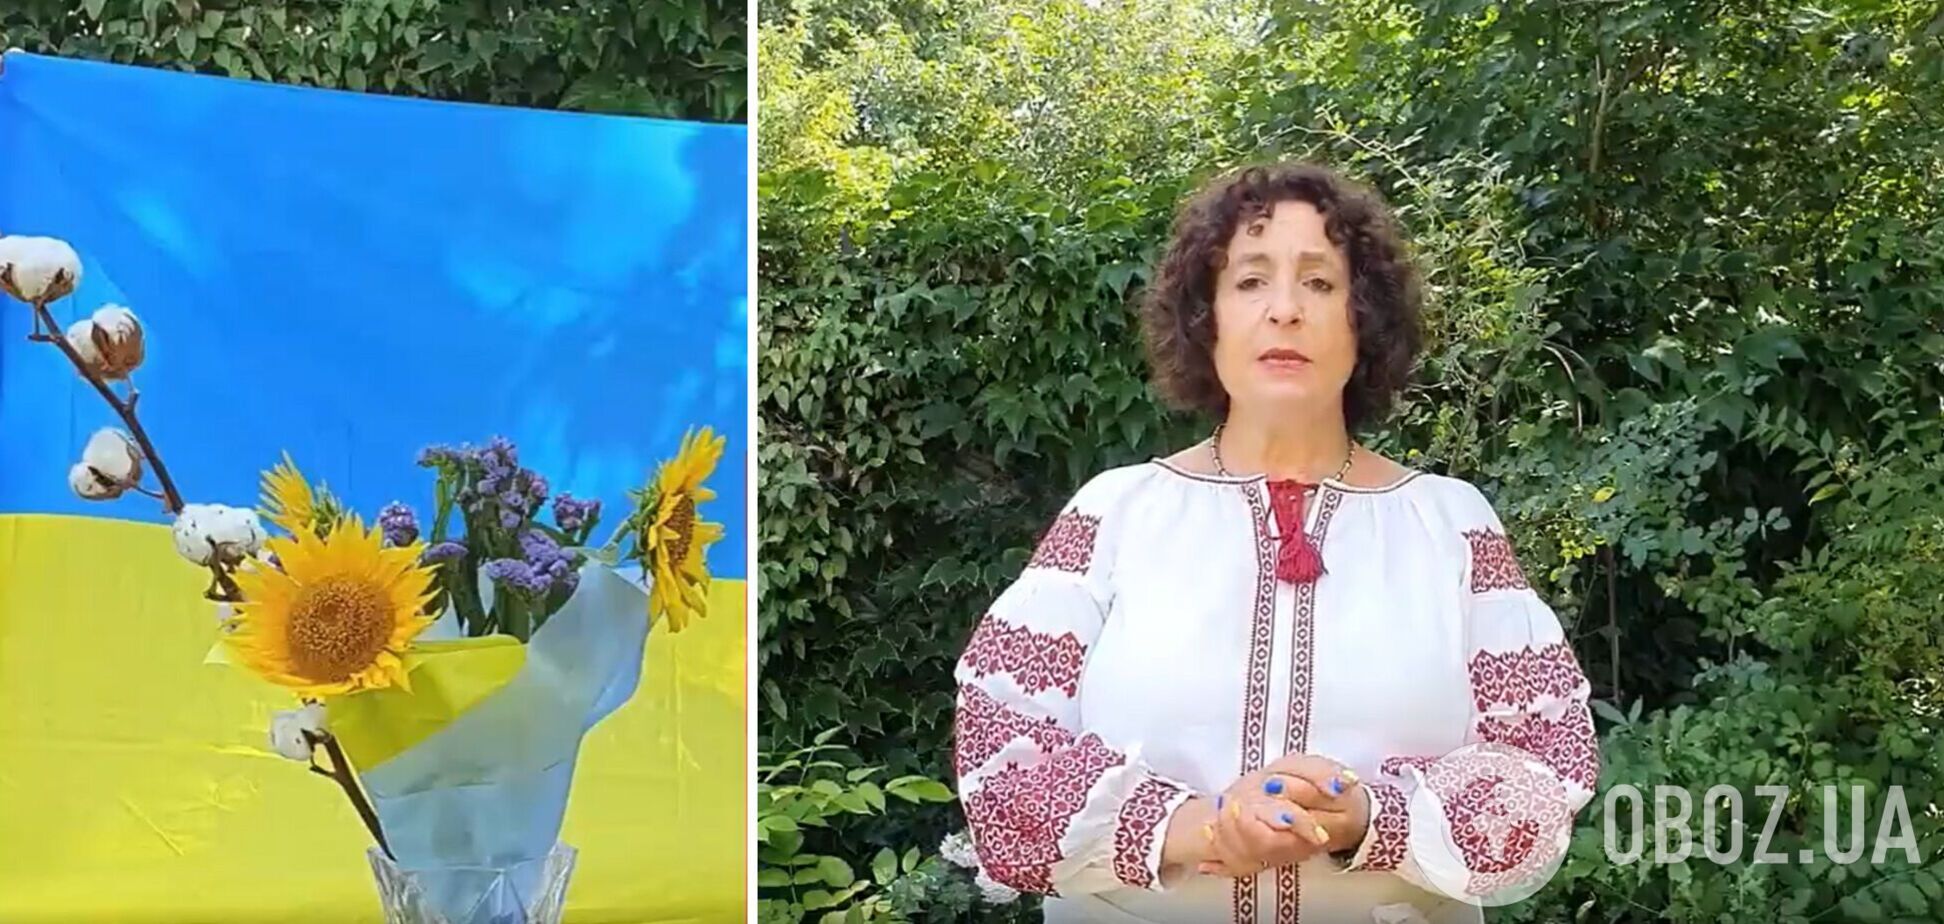 Посол Британії в Україні склала букет із соняшниками та бавовною, вітаючи українців з Днем Незалежності. Відео 